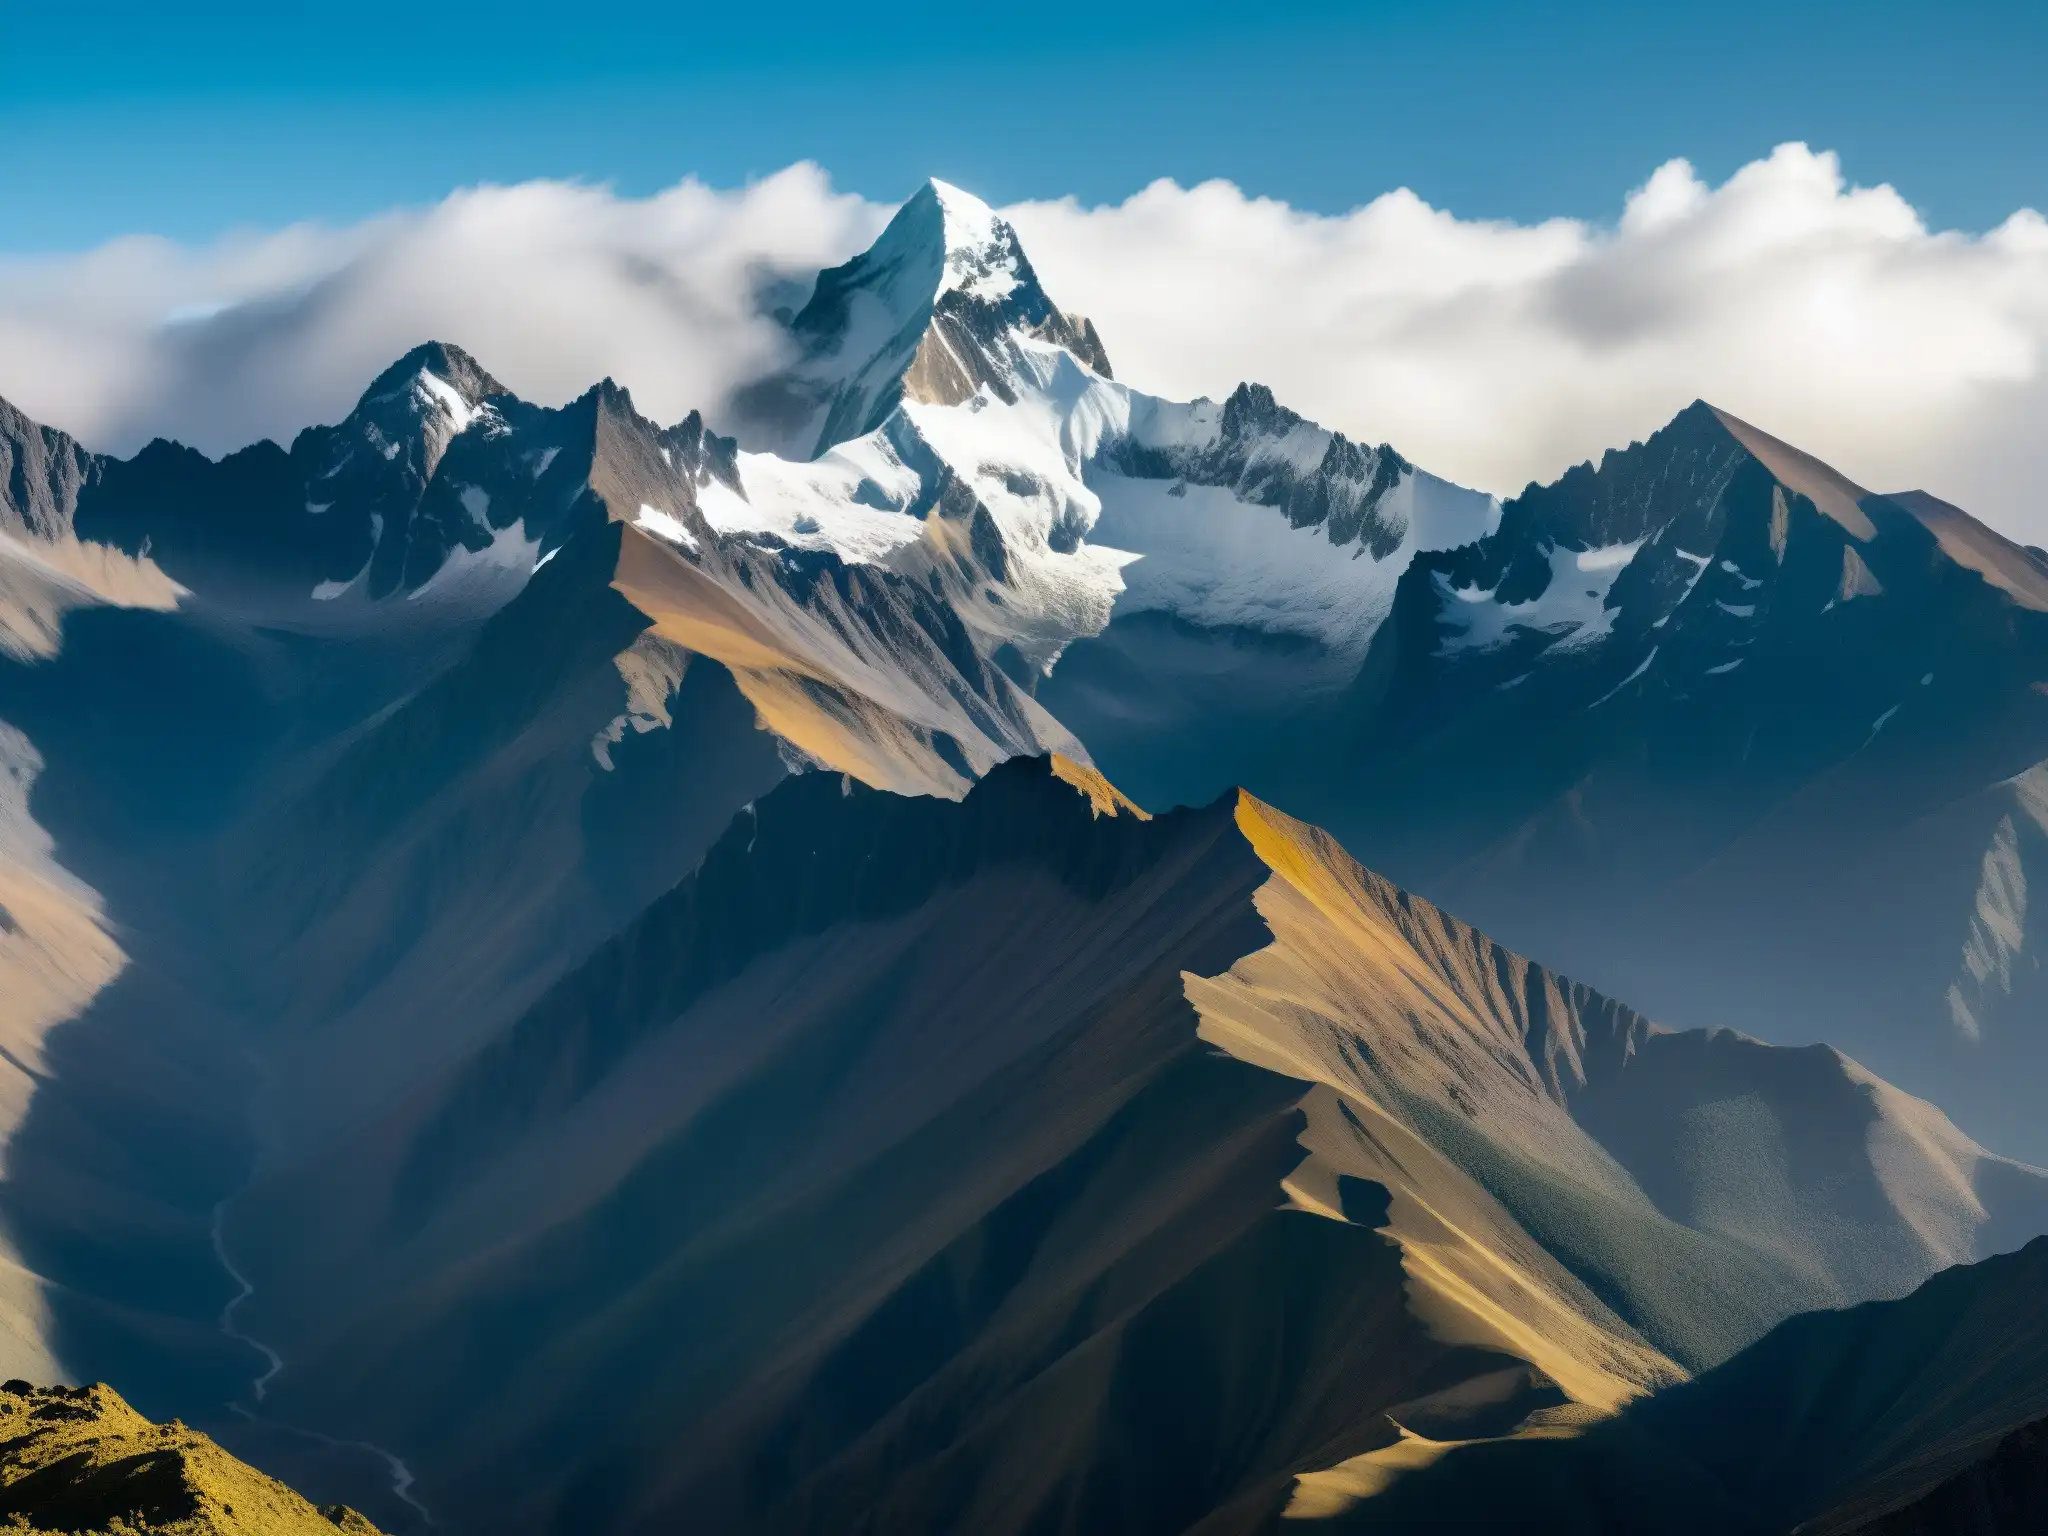 Los picos nevados de los Andes crean un paisaje misterioso, con la silueta del Ucumar sutilmente visible